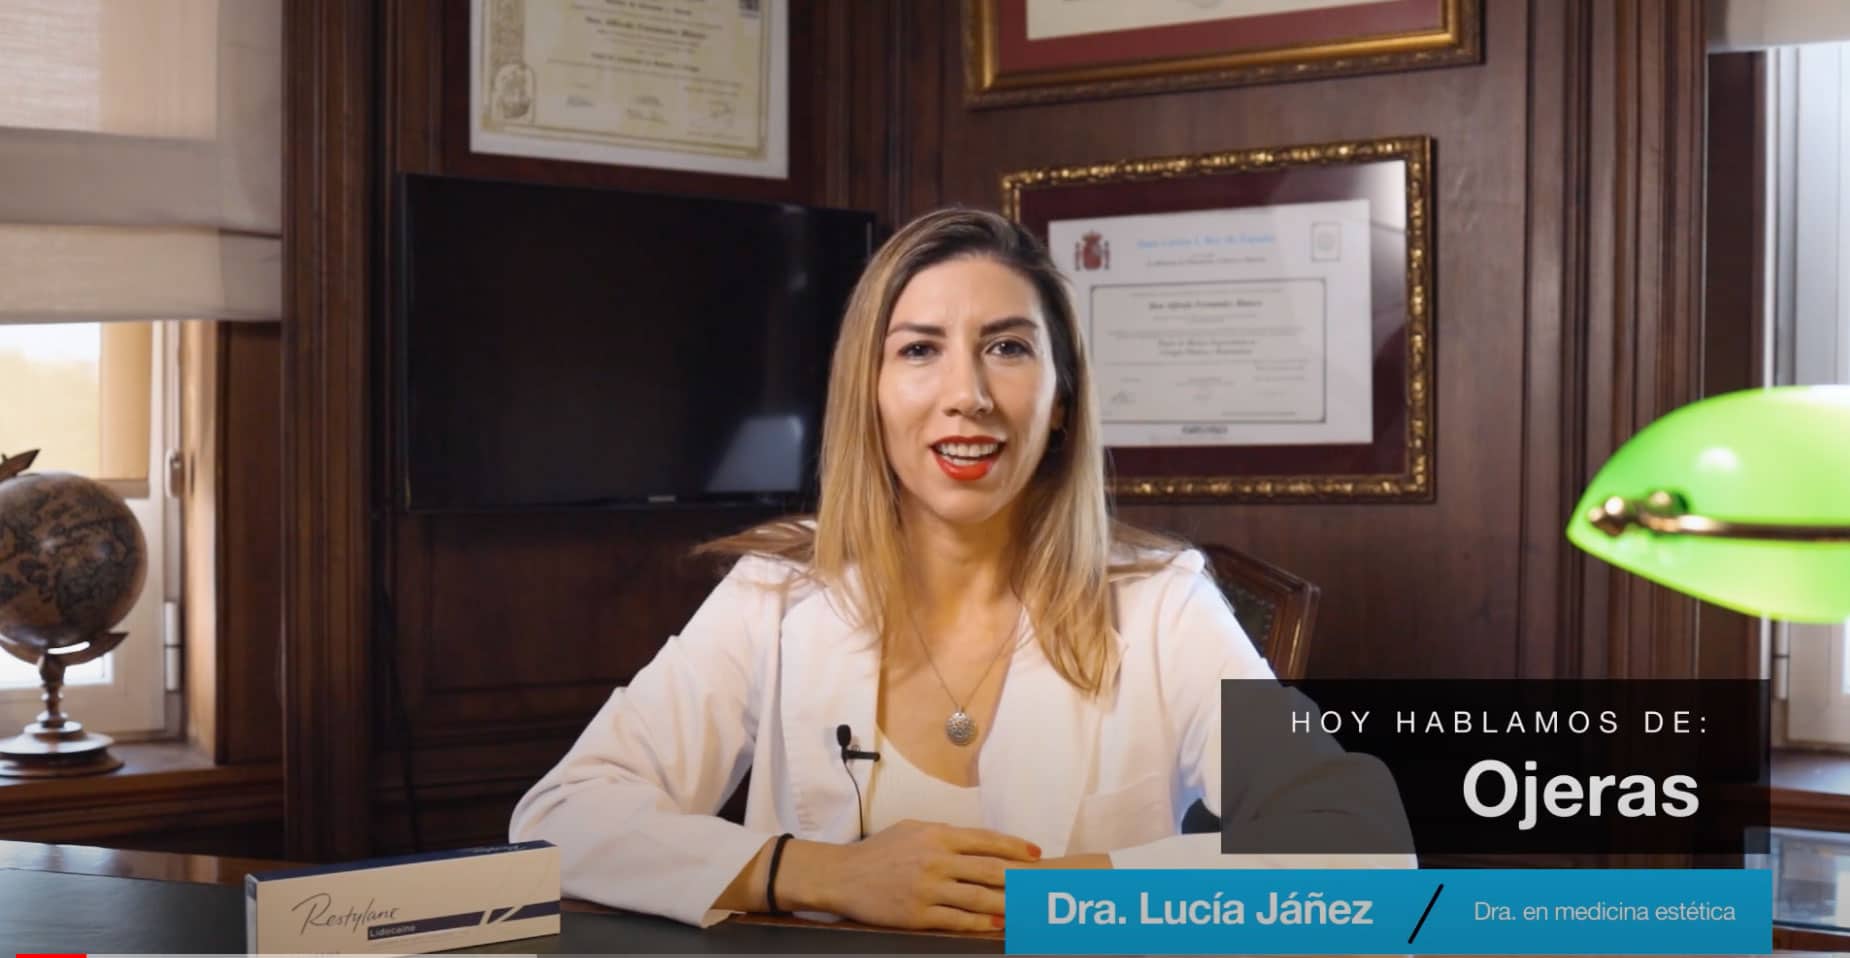 Videoblog acerca de cómo eliminar las ojeras con medicina estética